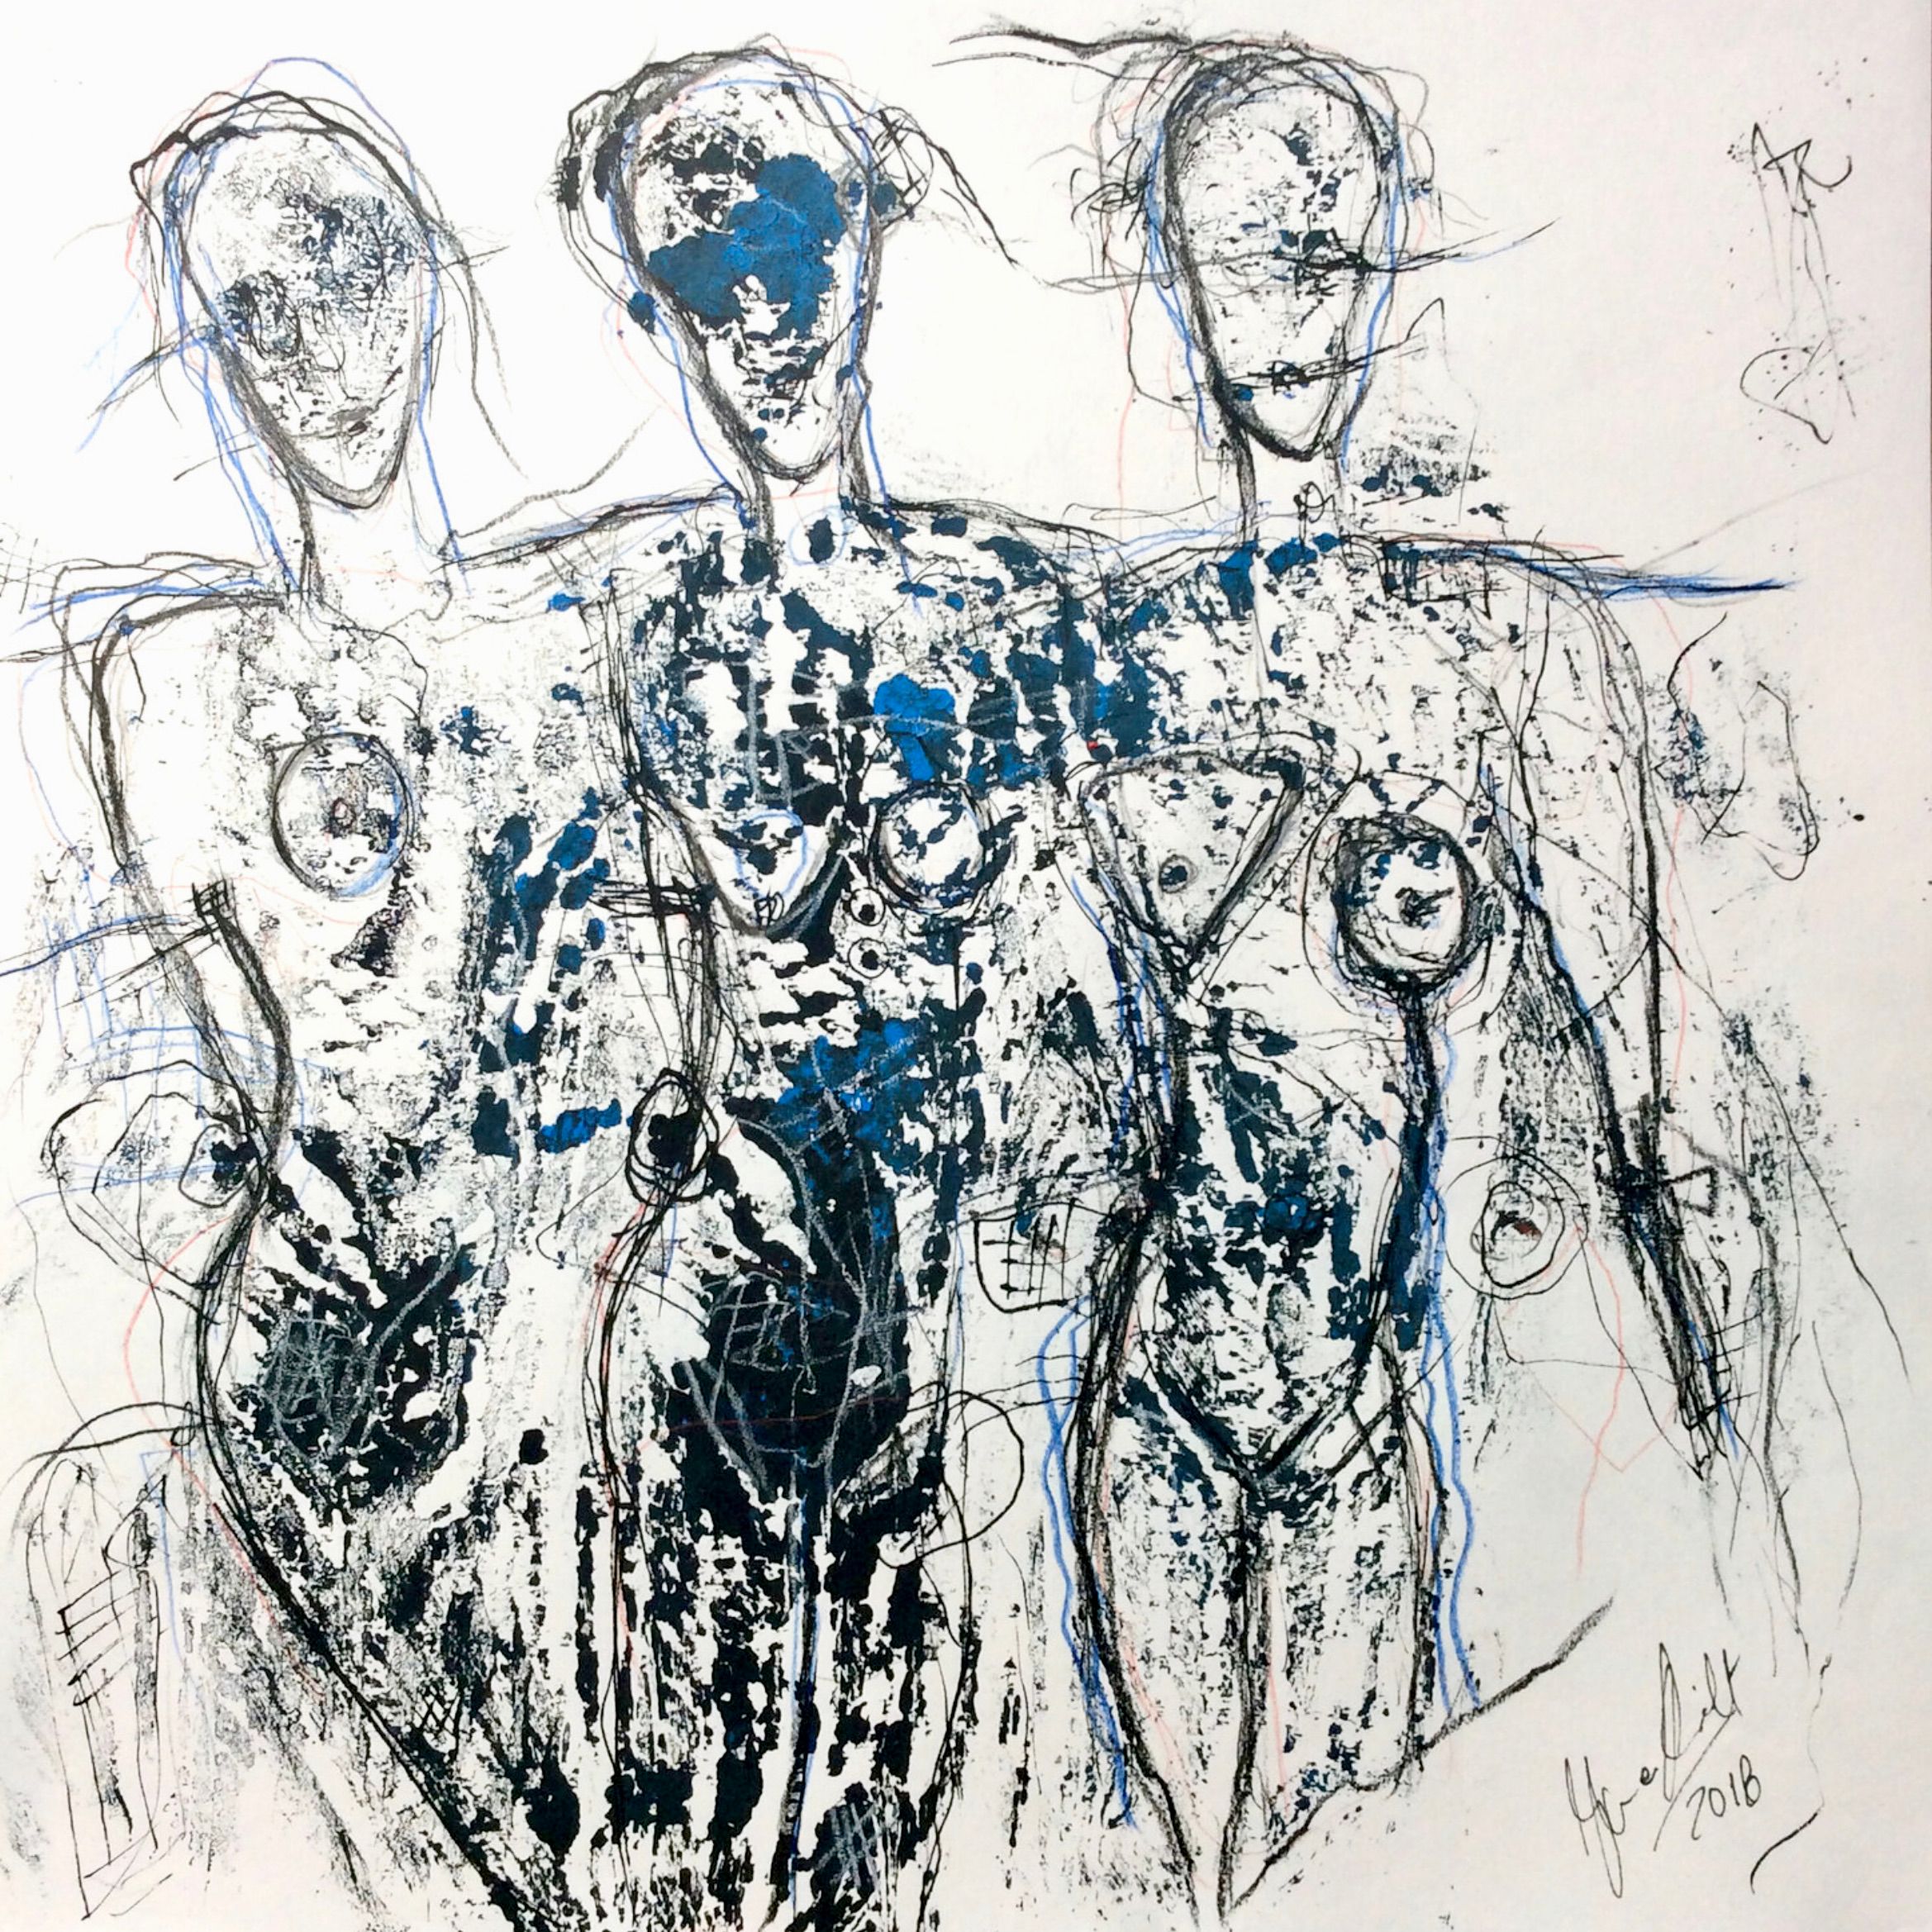 Il dipinto/disegno ritrattistico semi-astratto ed espressivo "Monoprint No. 27" di Ilona Schmidt mostra 3 corpi femminili nudi. In questo dipinto dominano i colori nero, bianco e blu.